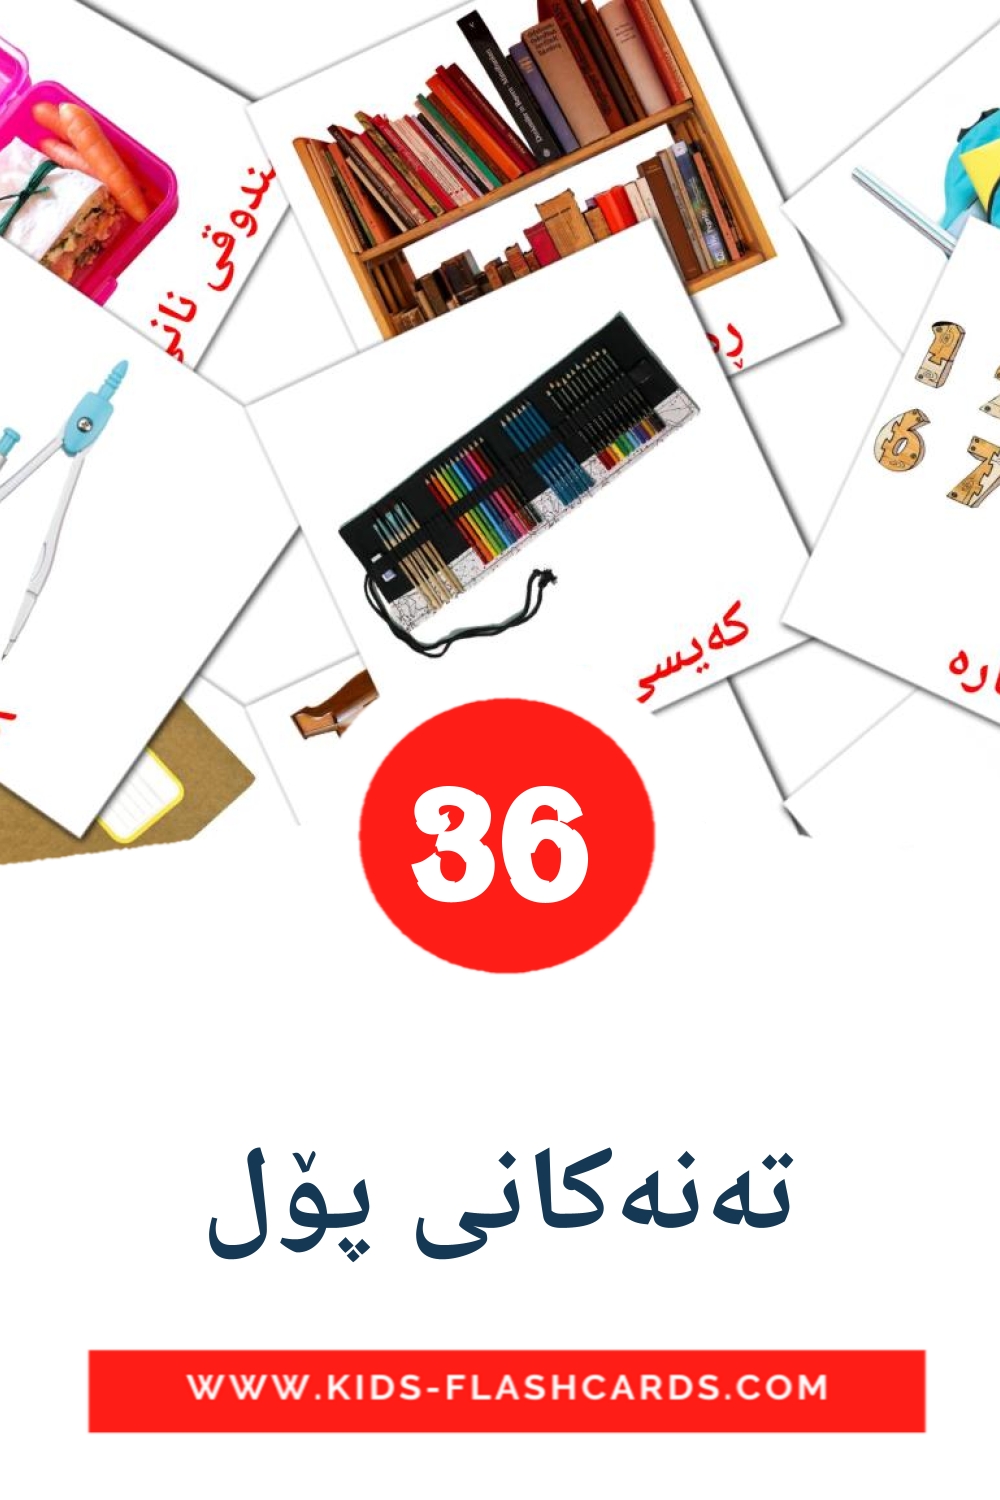 36 tarjetas didacticas de تەنەکانی پۆل para el jardín de infancia en kurdo(sorani)